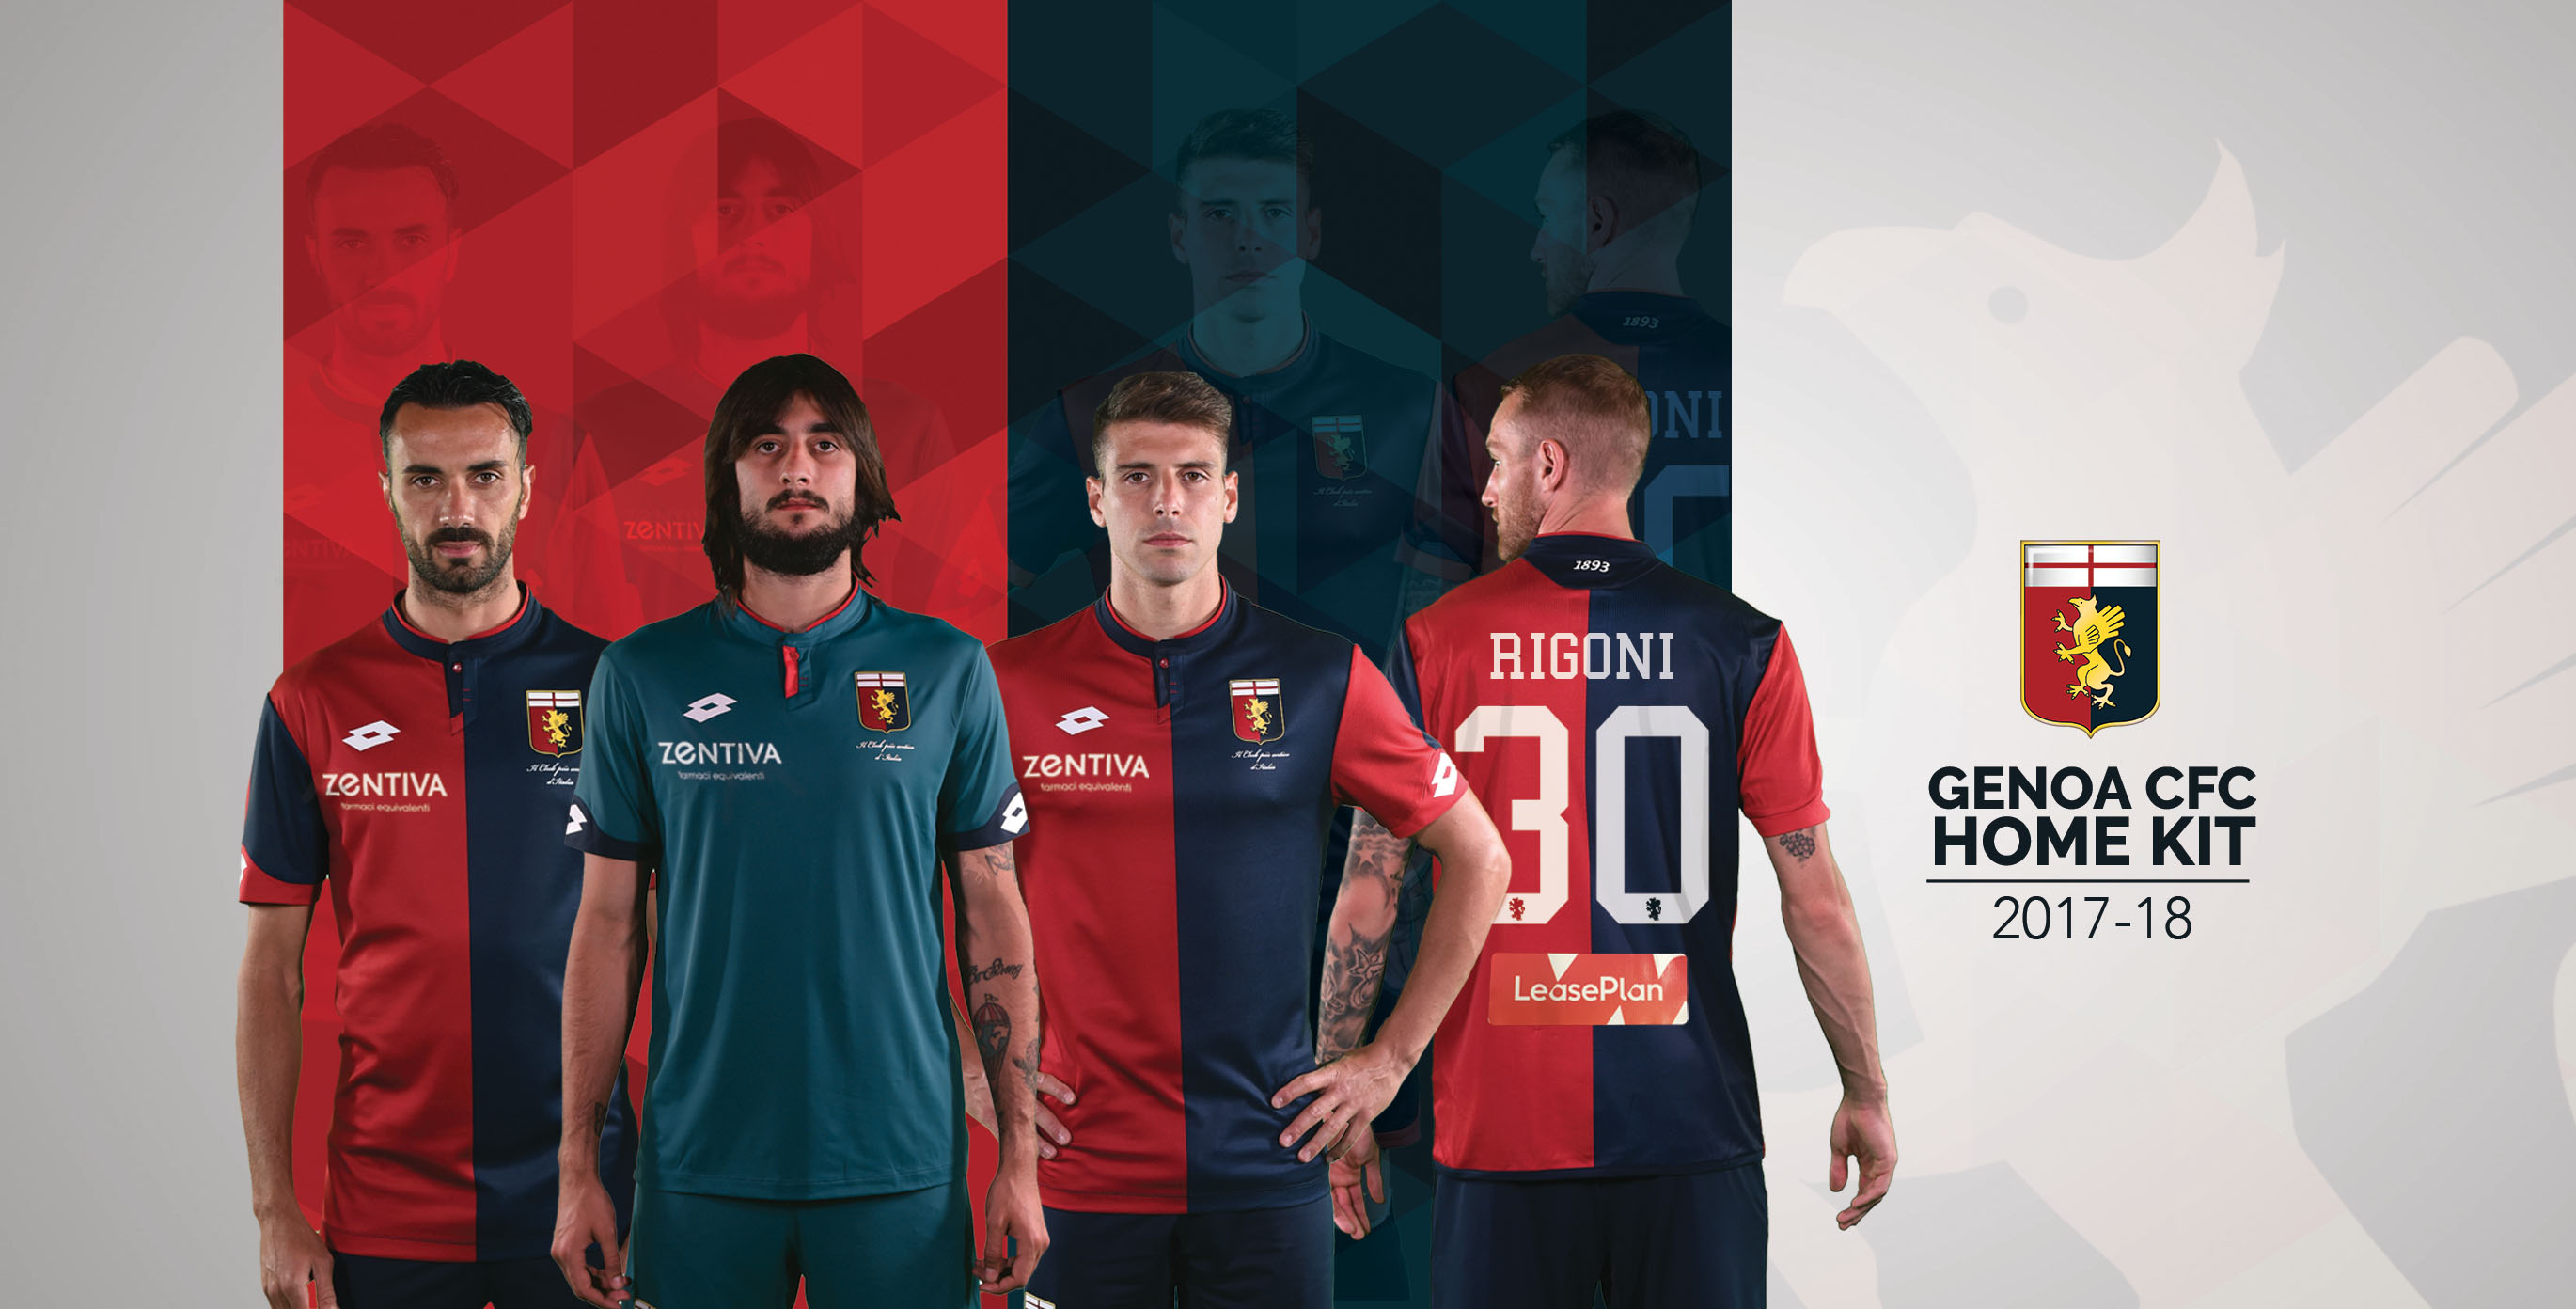 Nouveaux maillots Genoa CFC 2017-18